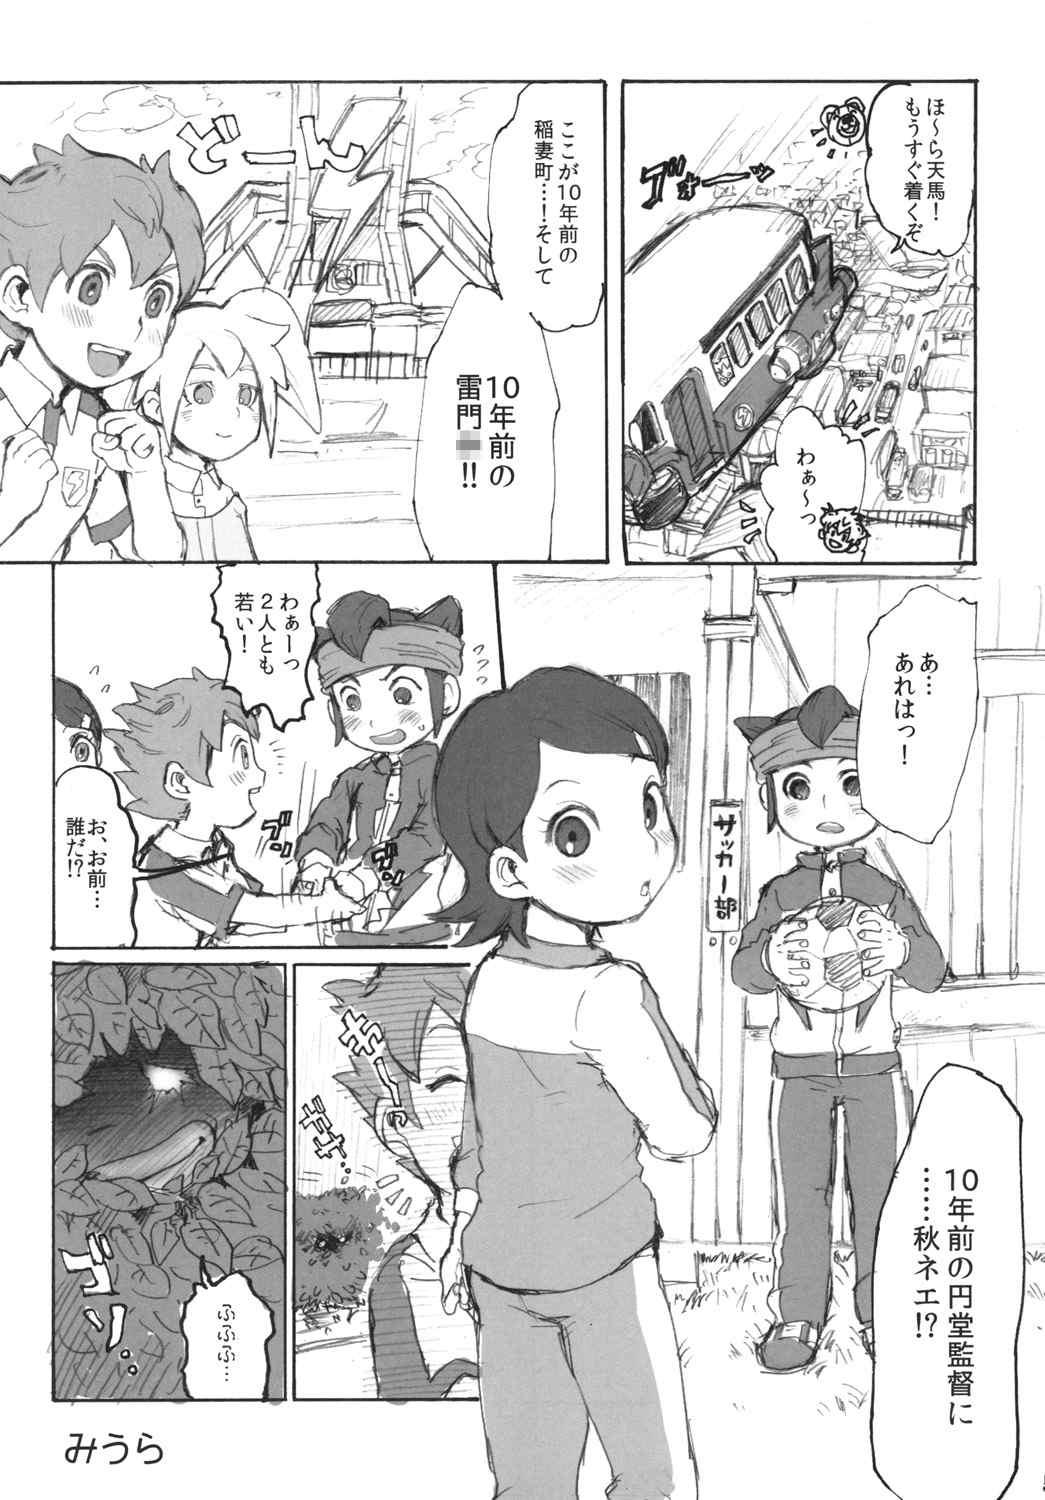 Guys Ore no Aki wa Mabushii - Inazuma eleven go Toilet - Page 3